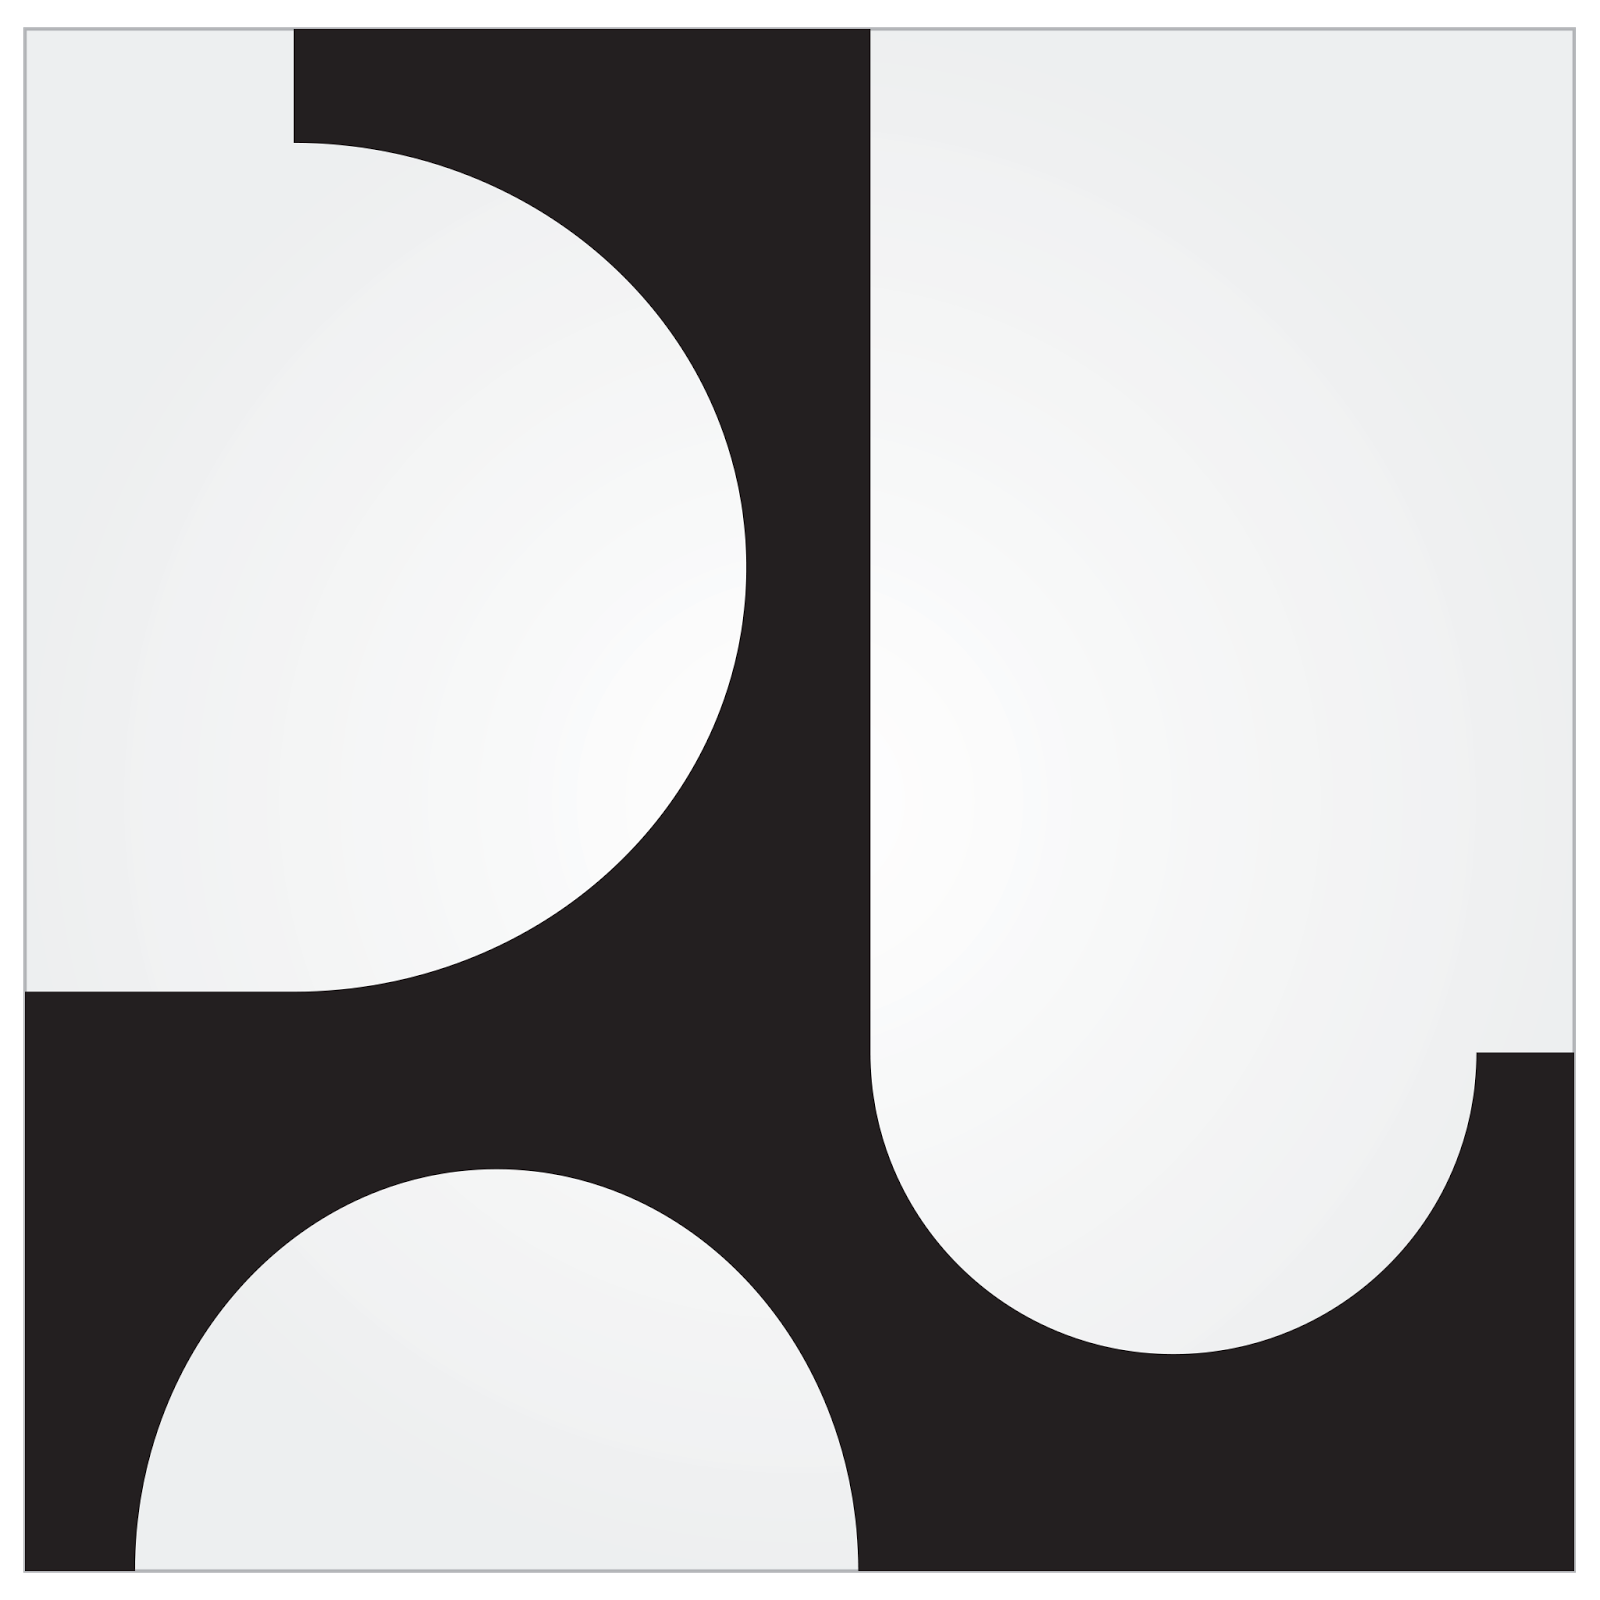 logo pu hitam putih